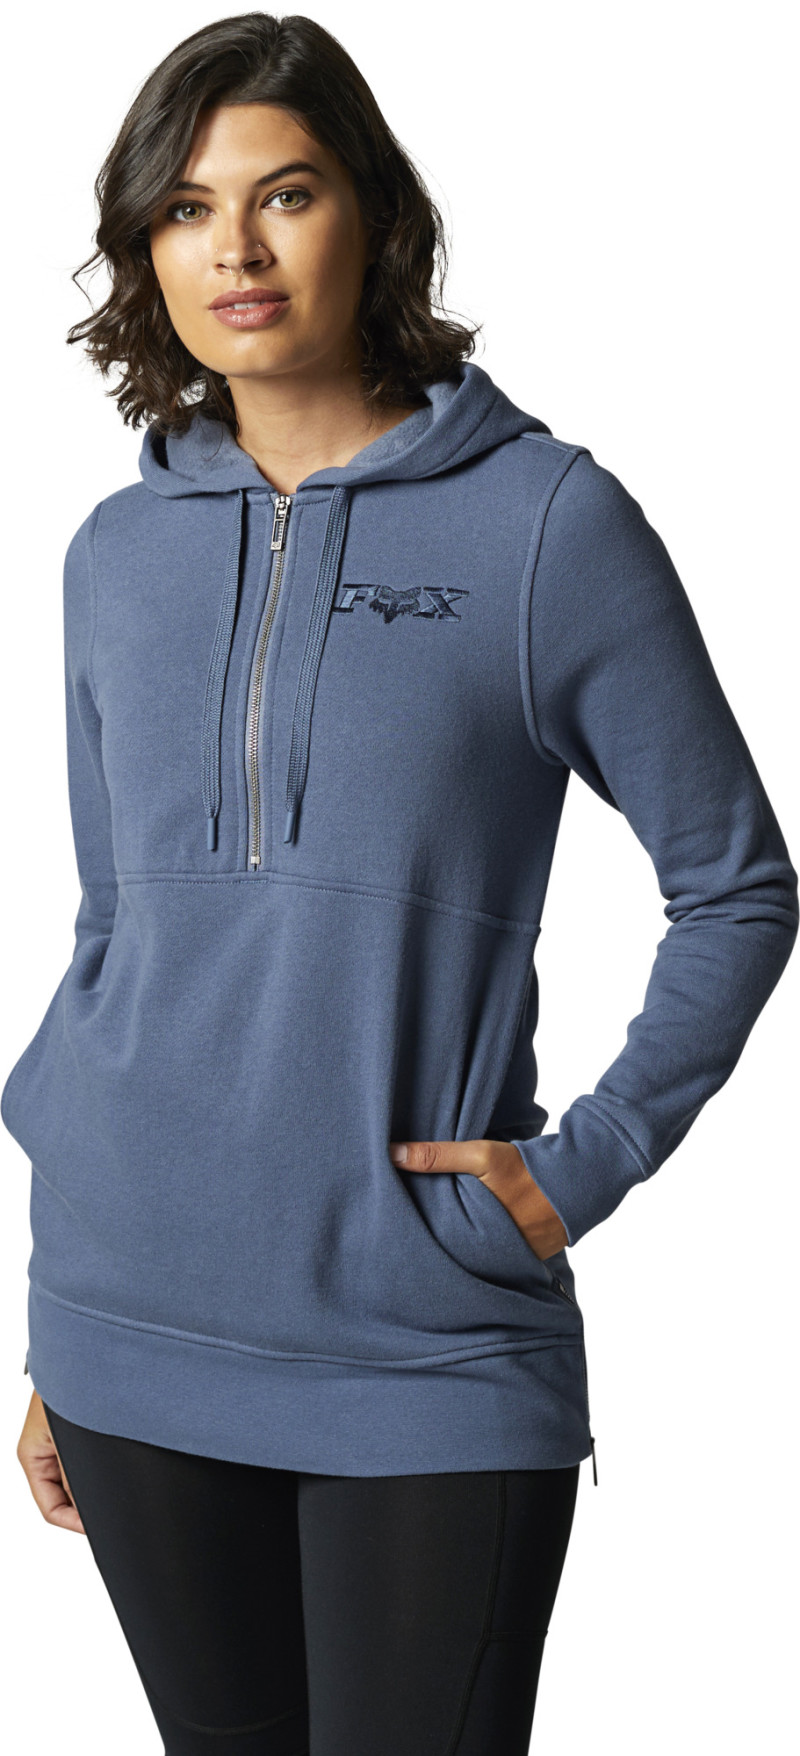 fox racing hoodies  calibration zip fleece hoodies - casual